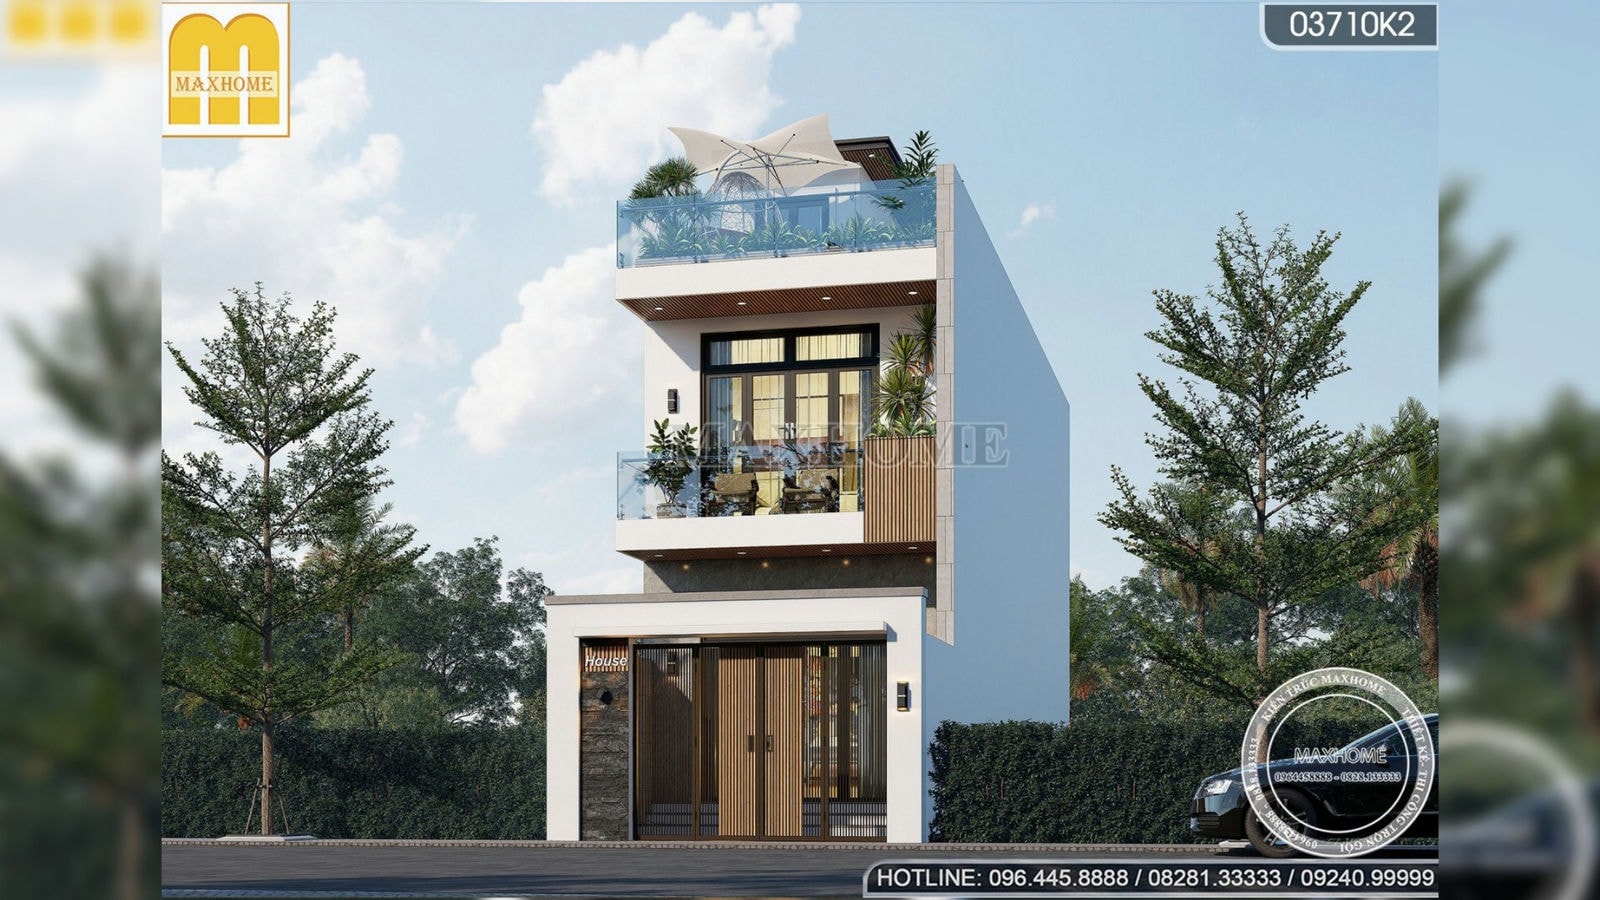 Mẫu nhà phố 2 tầng 1 tum đẹp tinh tế, tiện nghi do Maxhome thiết kế | MH02409